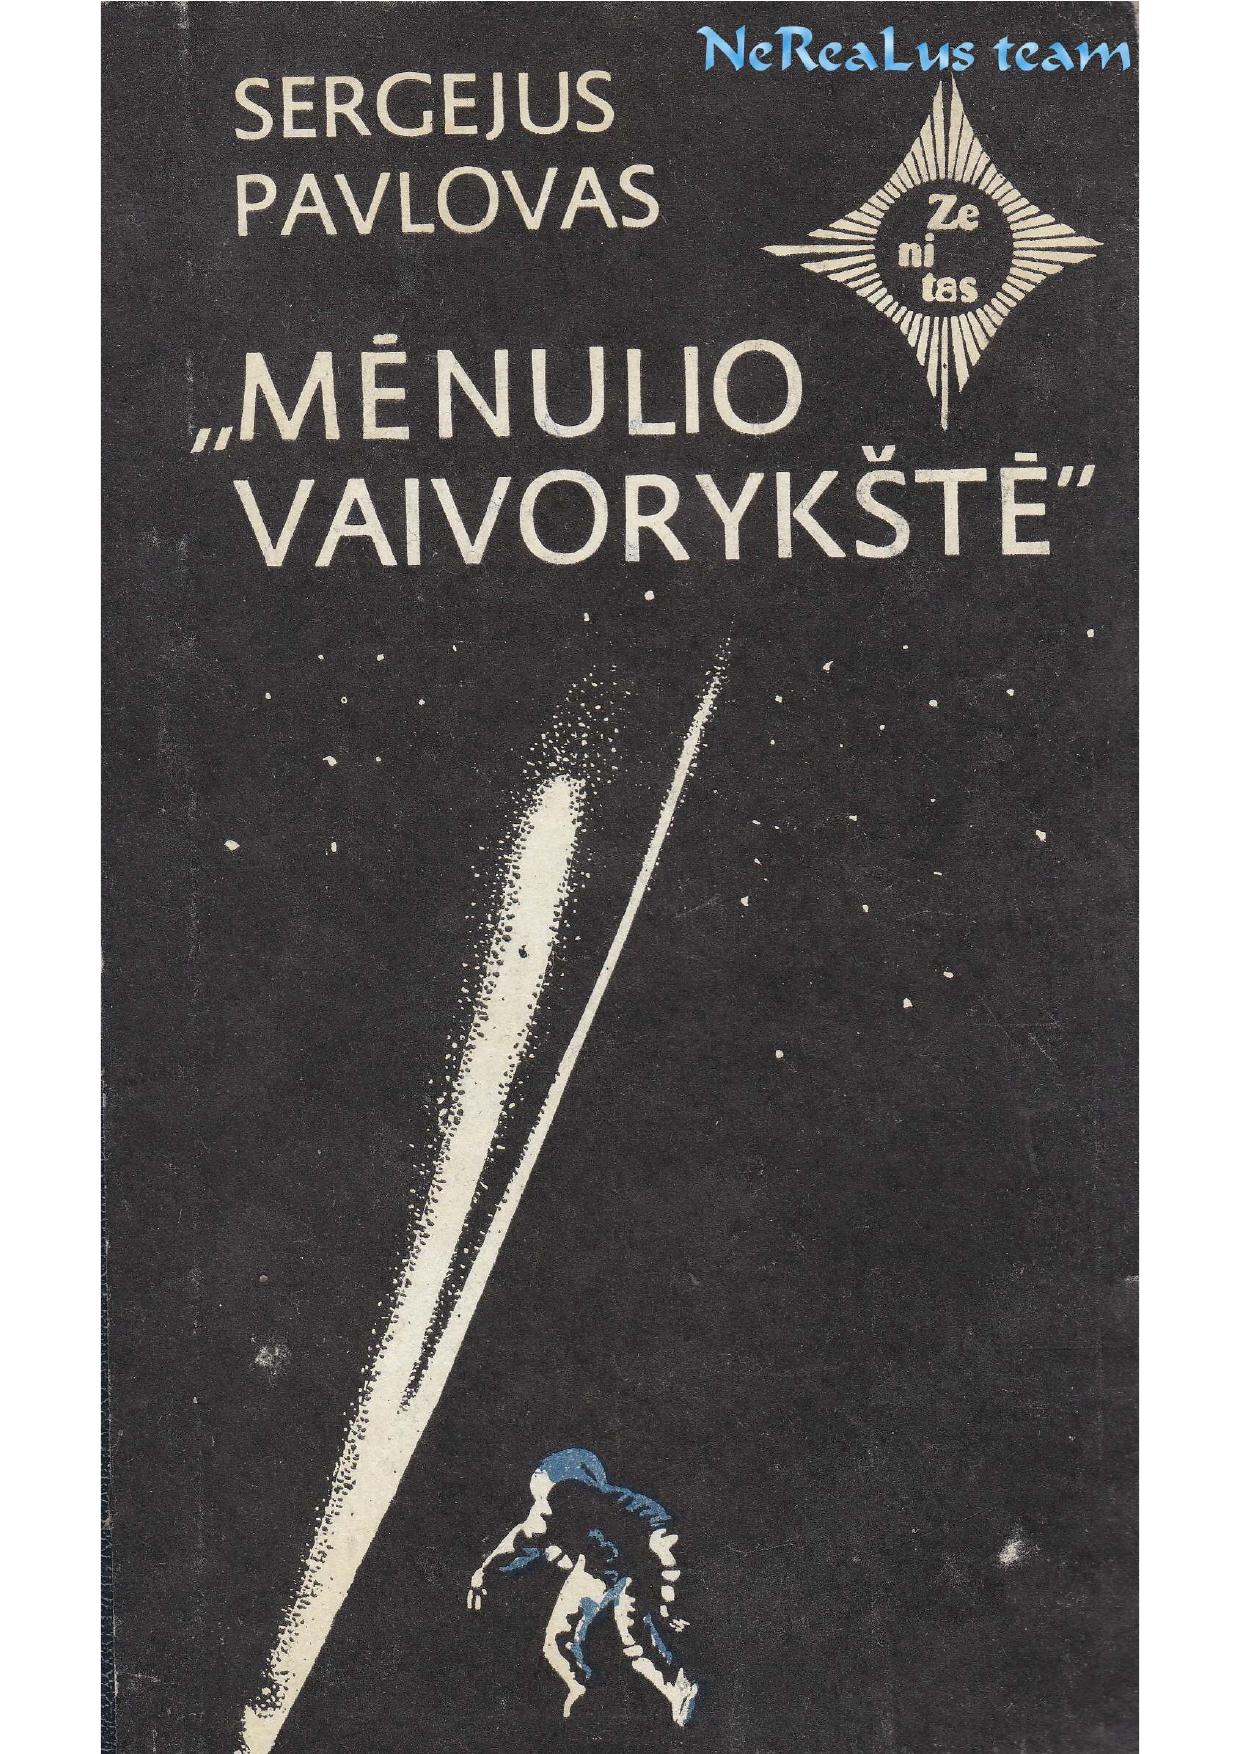 Sergejus Pavlovas - Mėnulio vaivorykštė II dalis (1986) LT- NRL